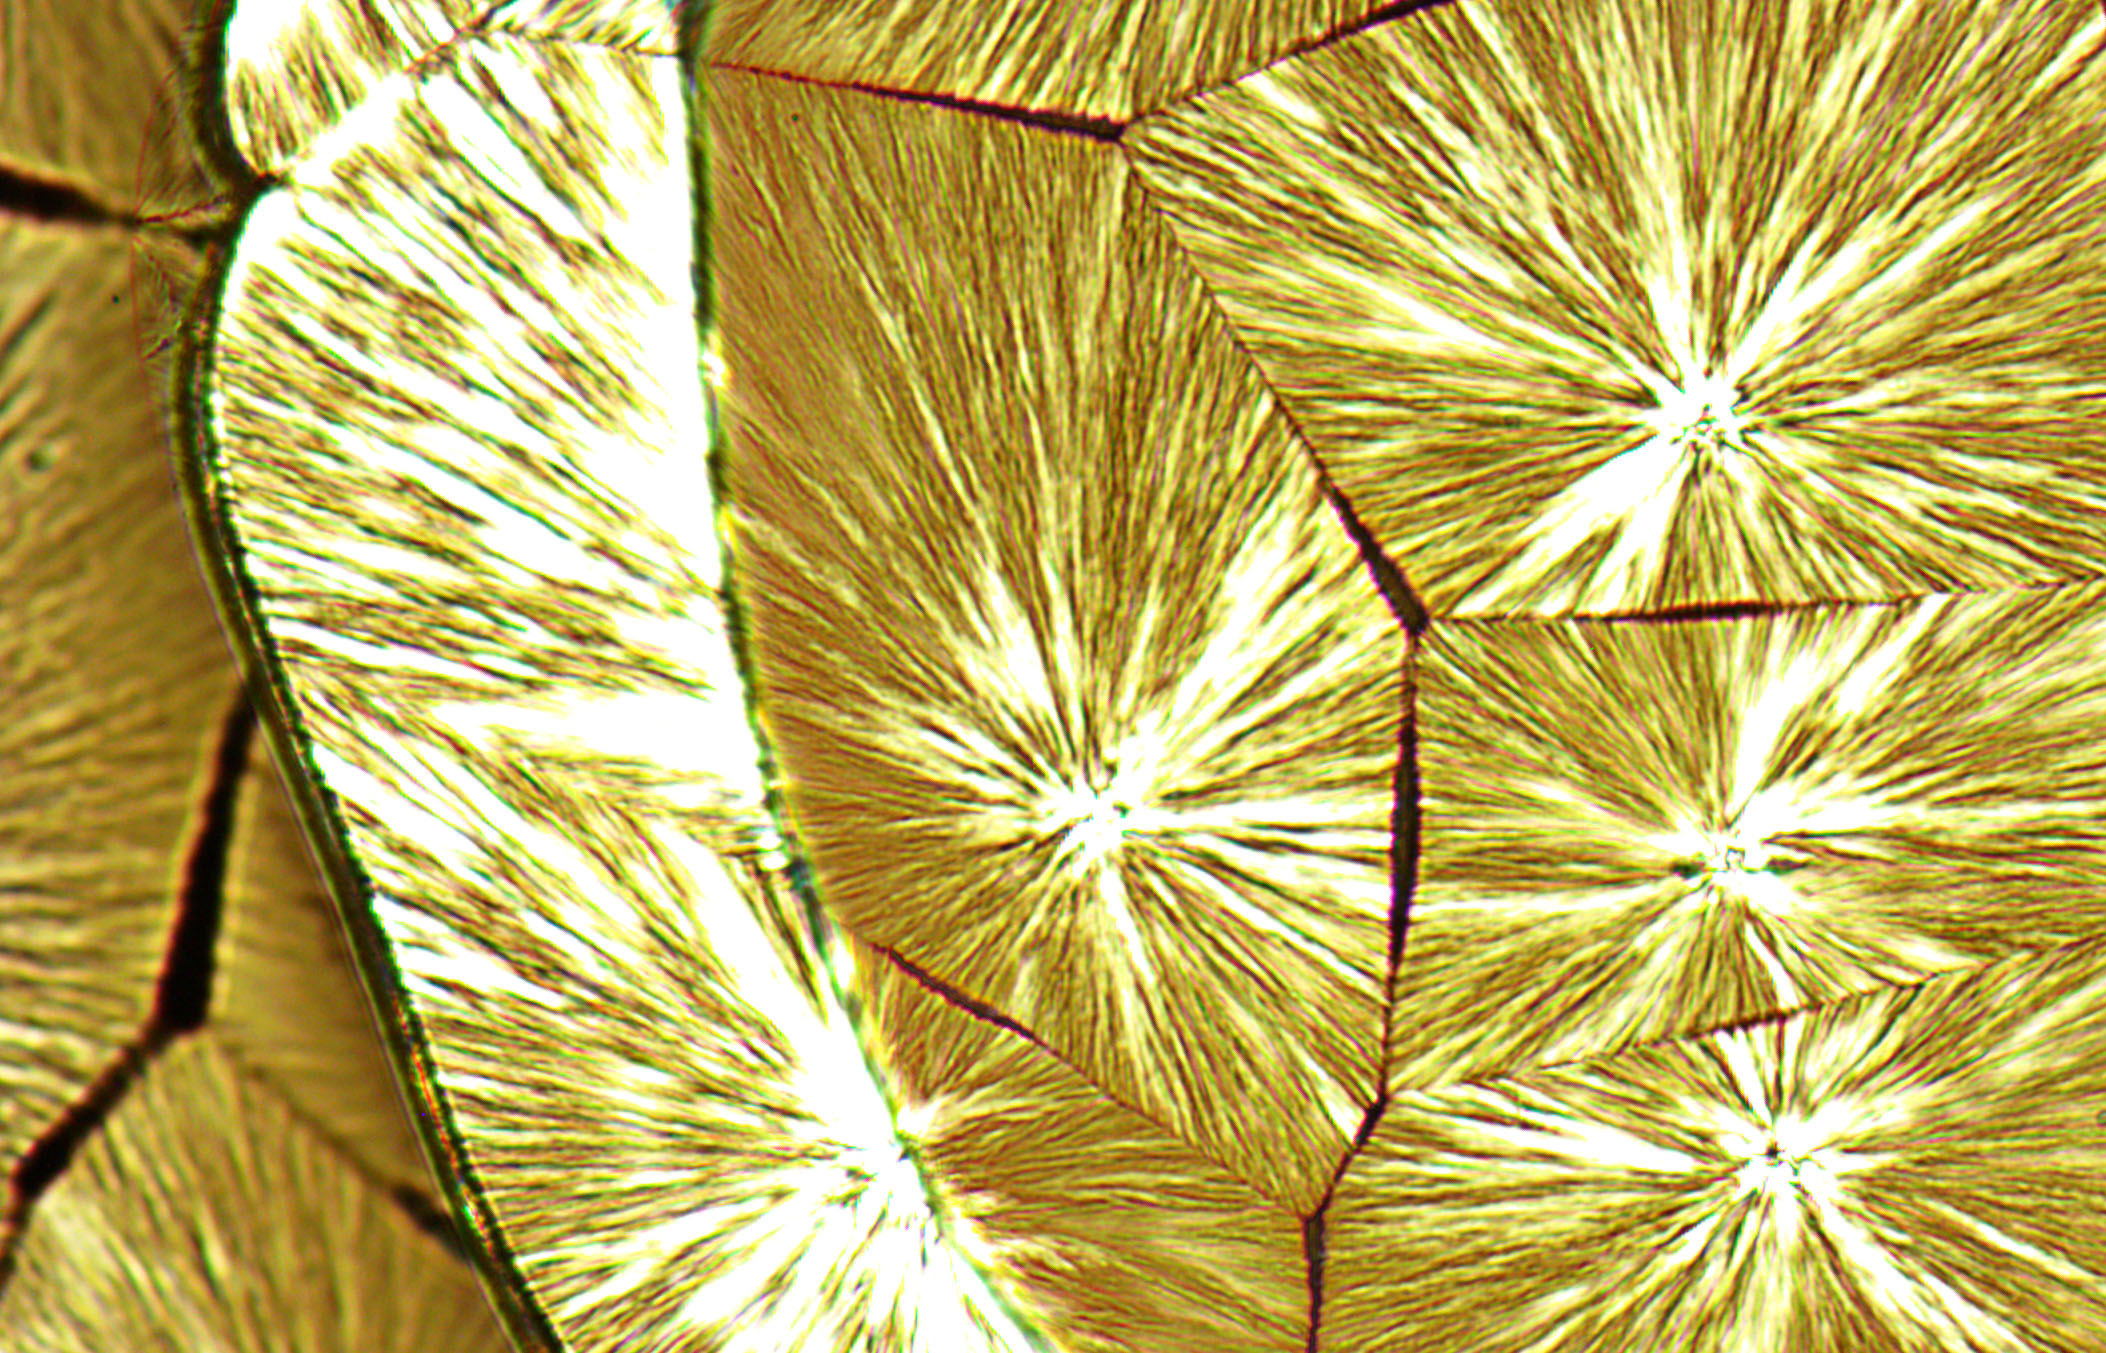 Structure cristalline observée en microscopie, brassage entre art et science.